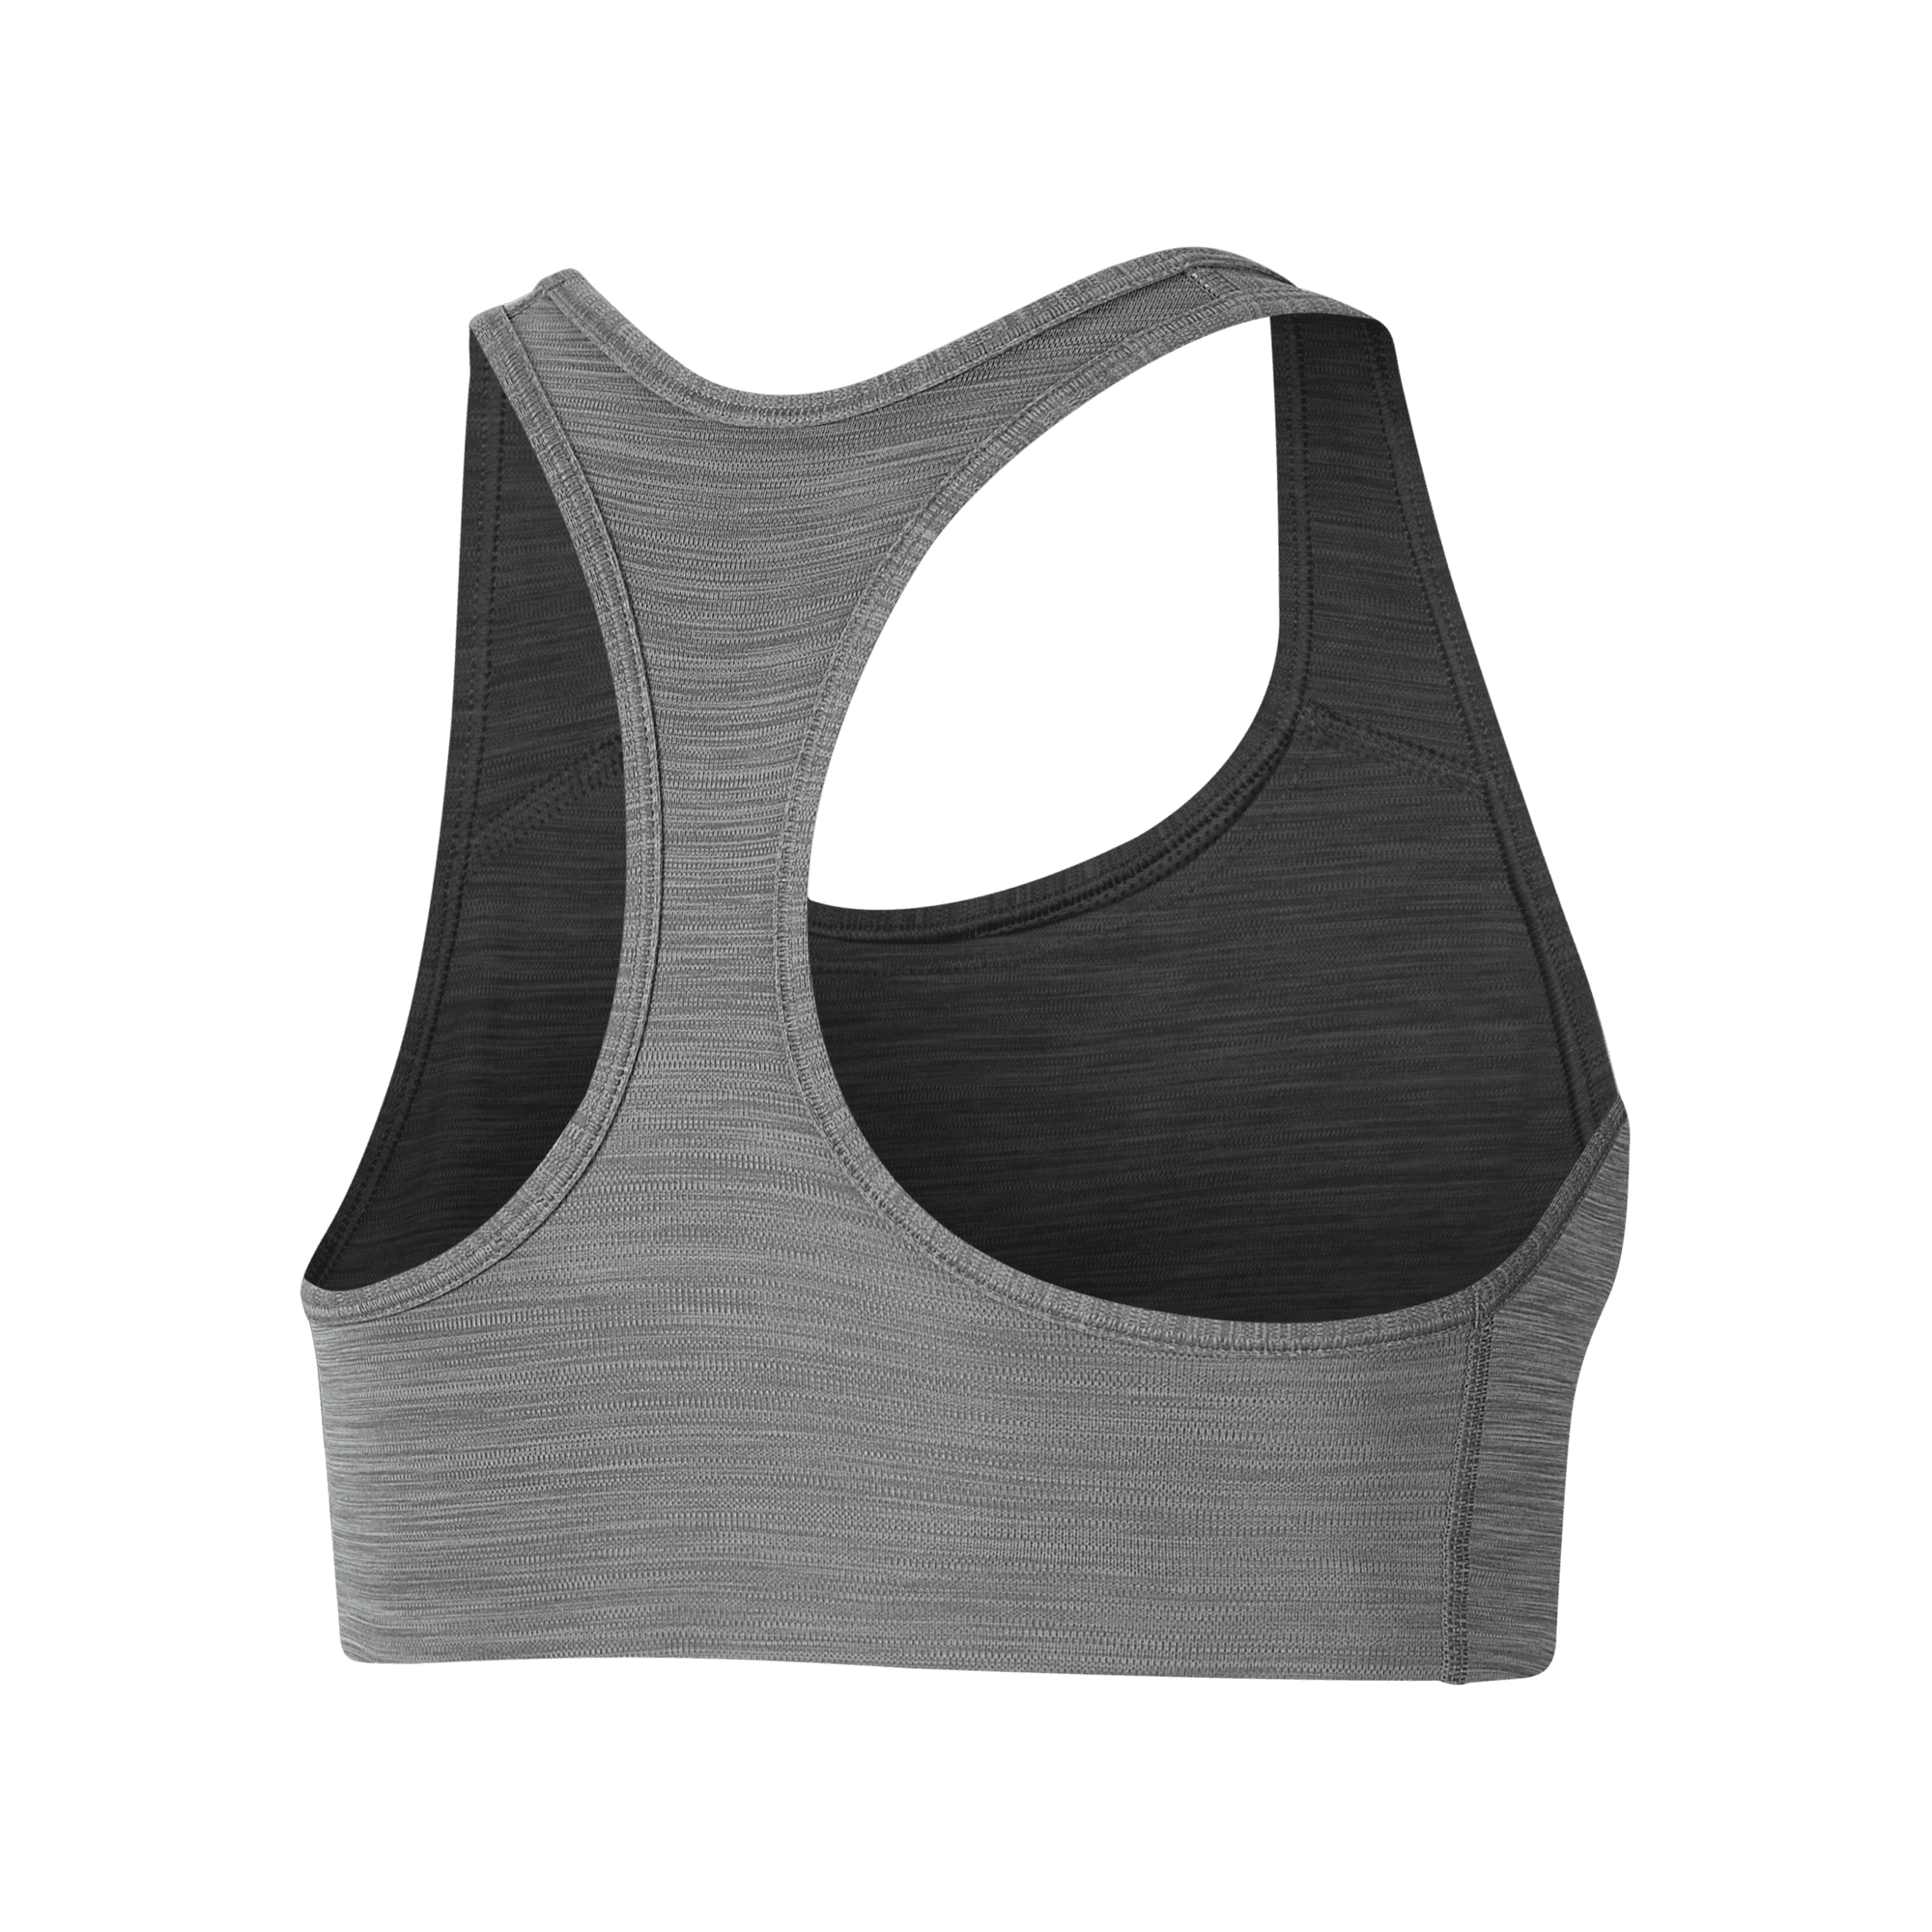 Nike Women's Swoosh Sports Bra - Grey